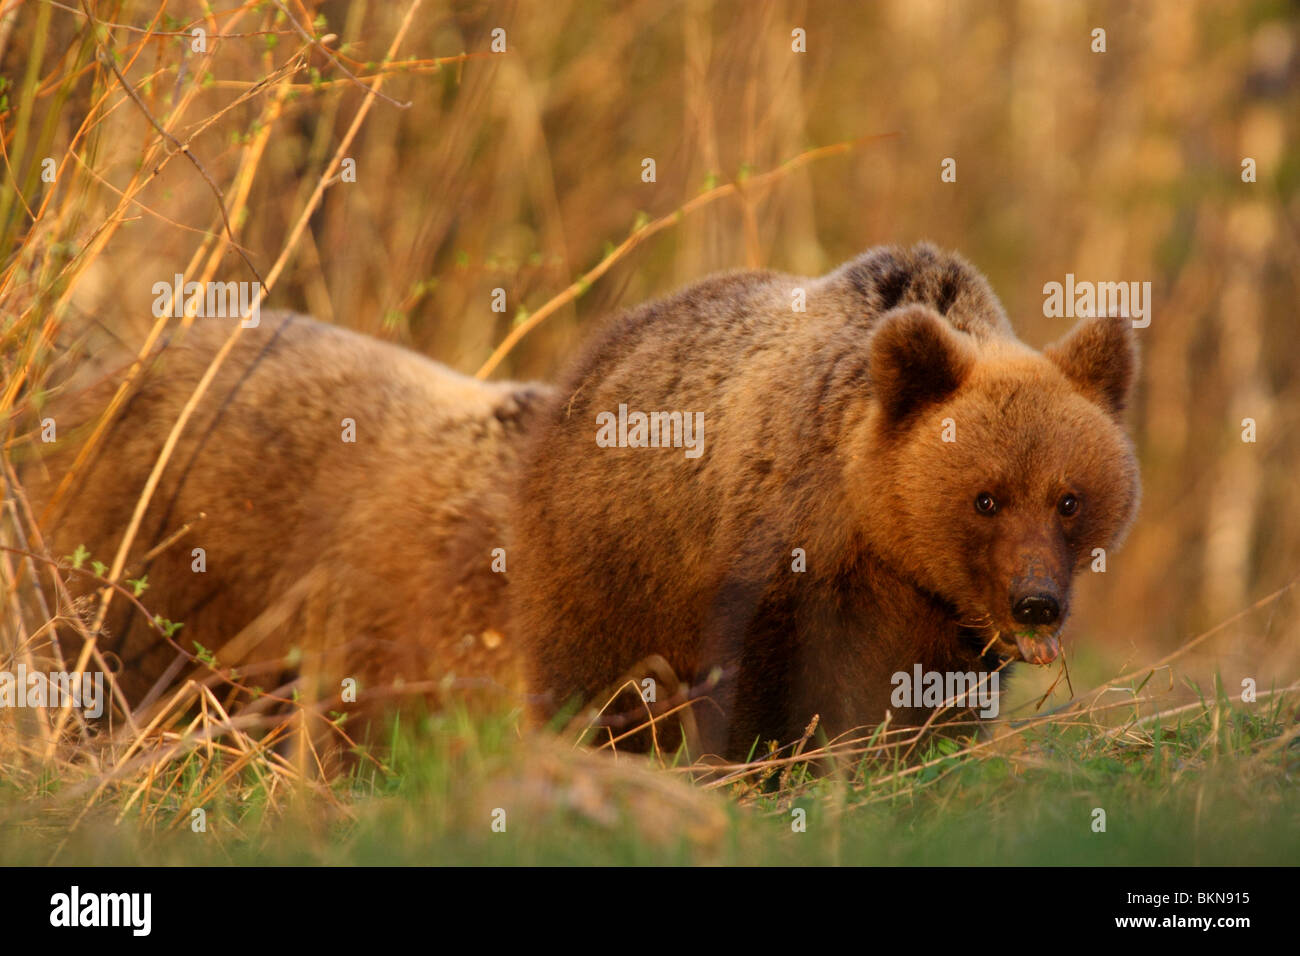 Two Brown bears (Ursus arctos), spring 2010 Stock Photo